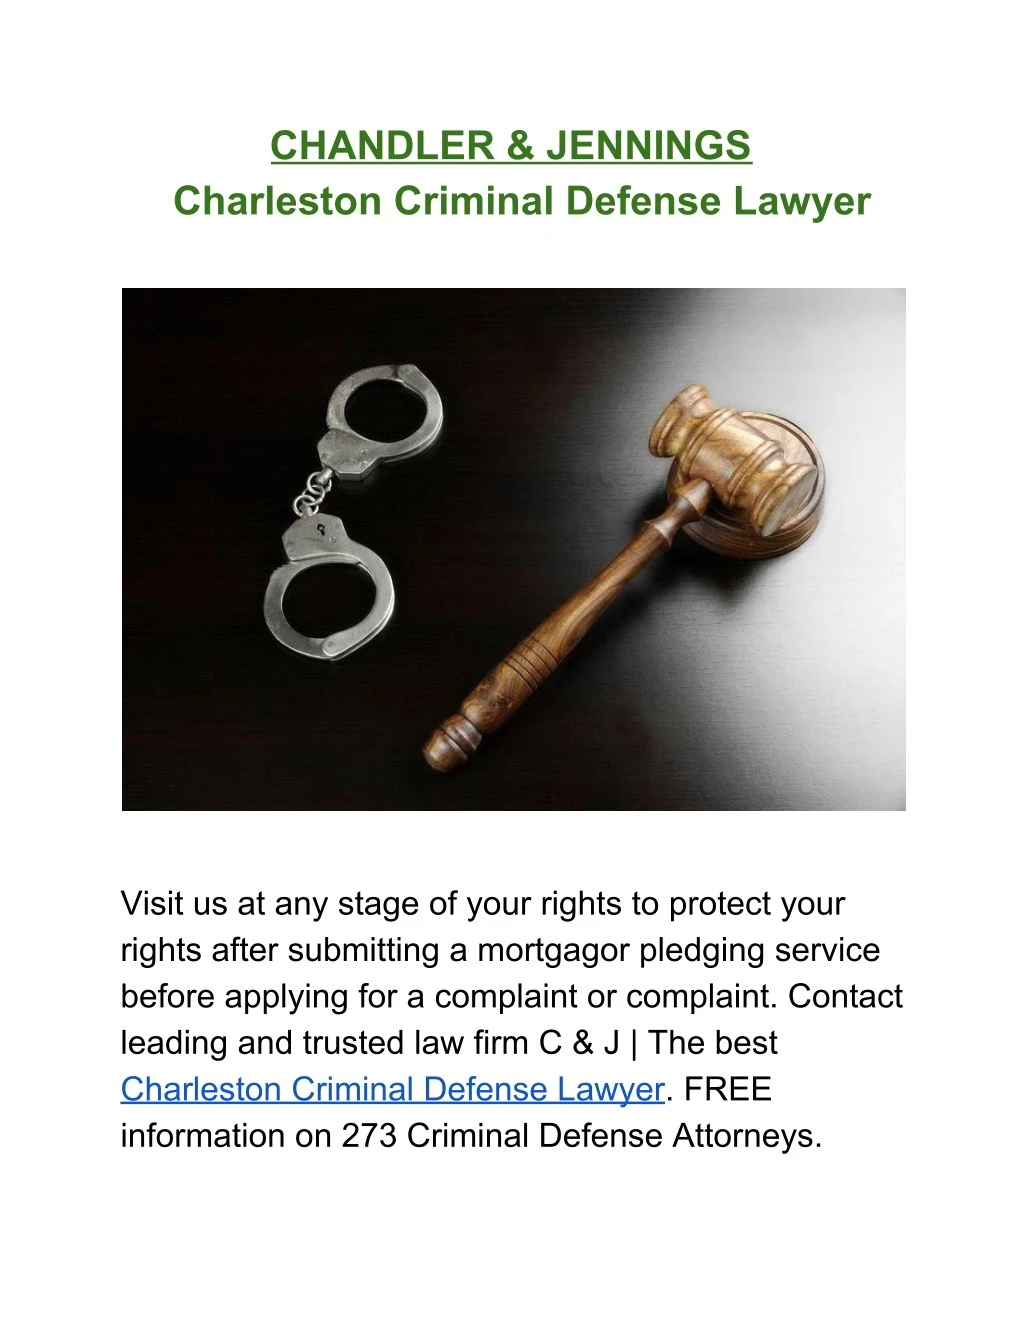 chandler jennings charleston criminal defense